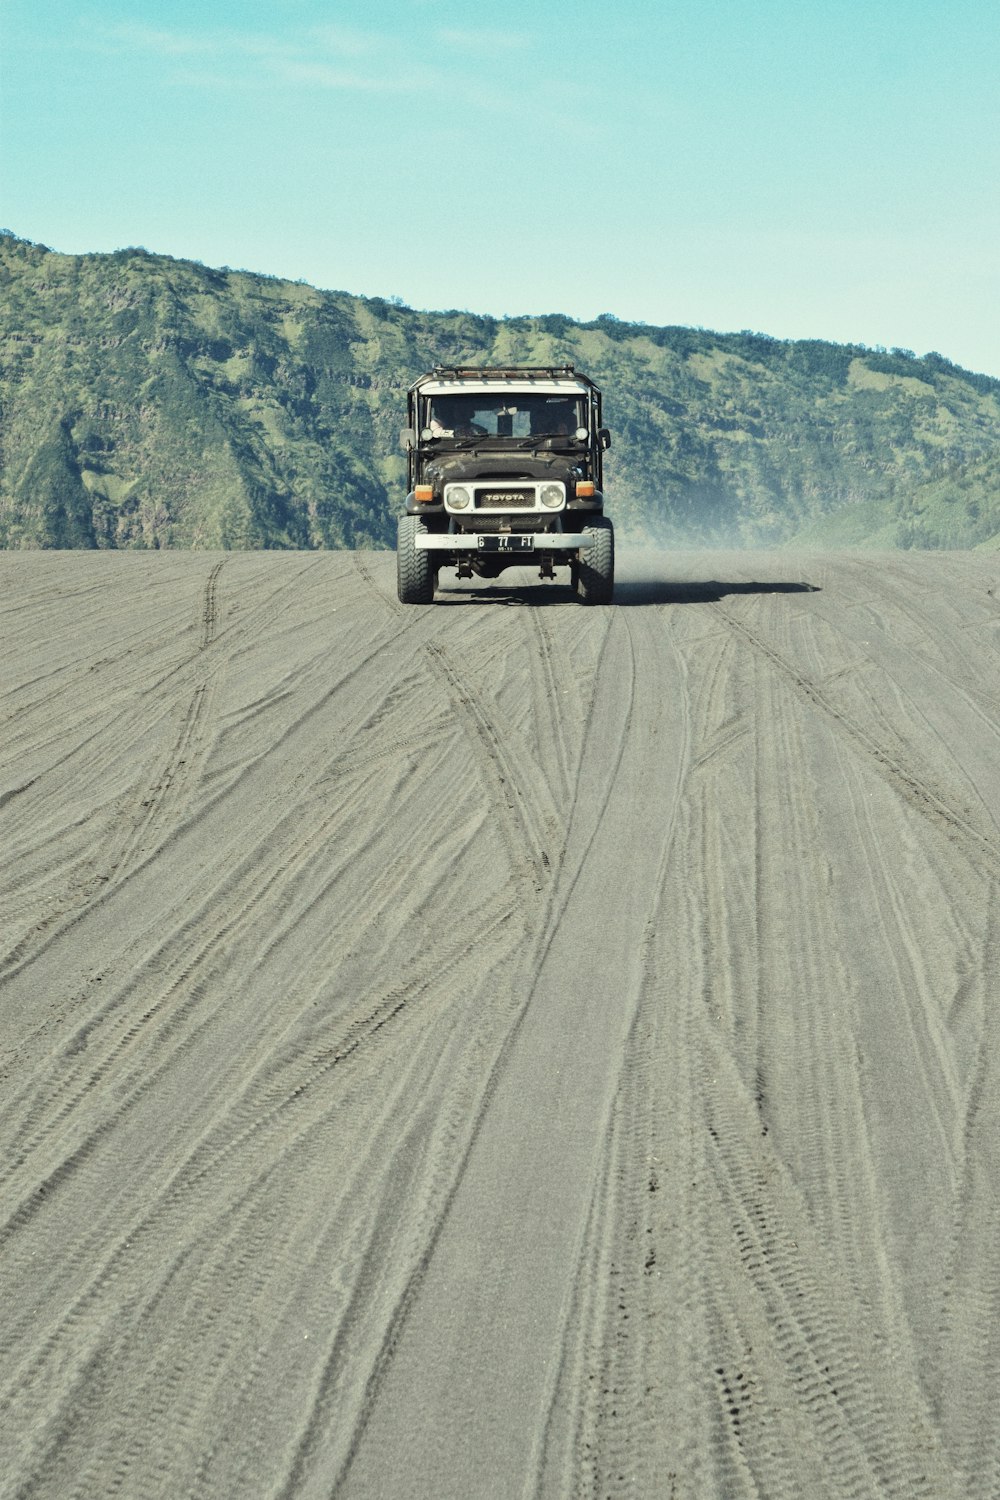 a truck driving down a dirt road near a mountain